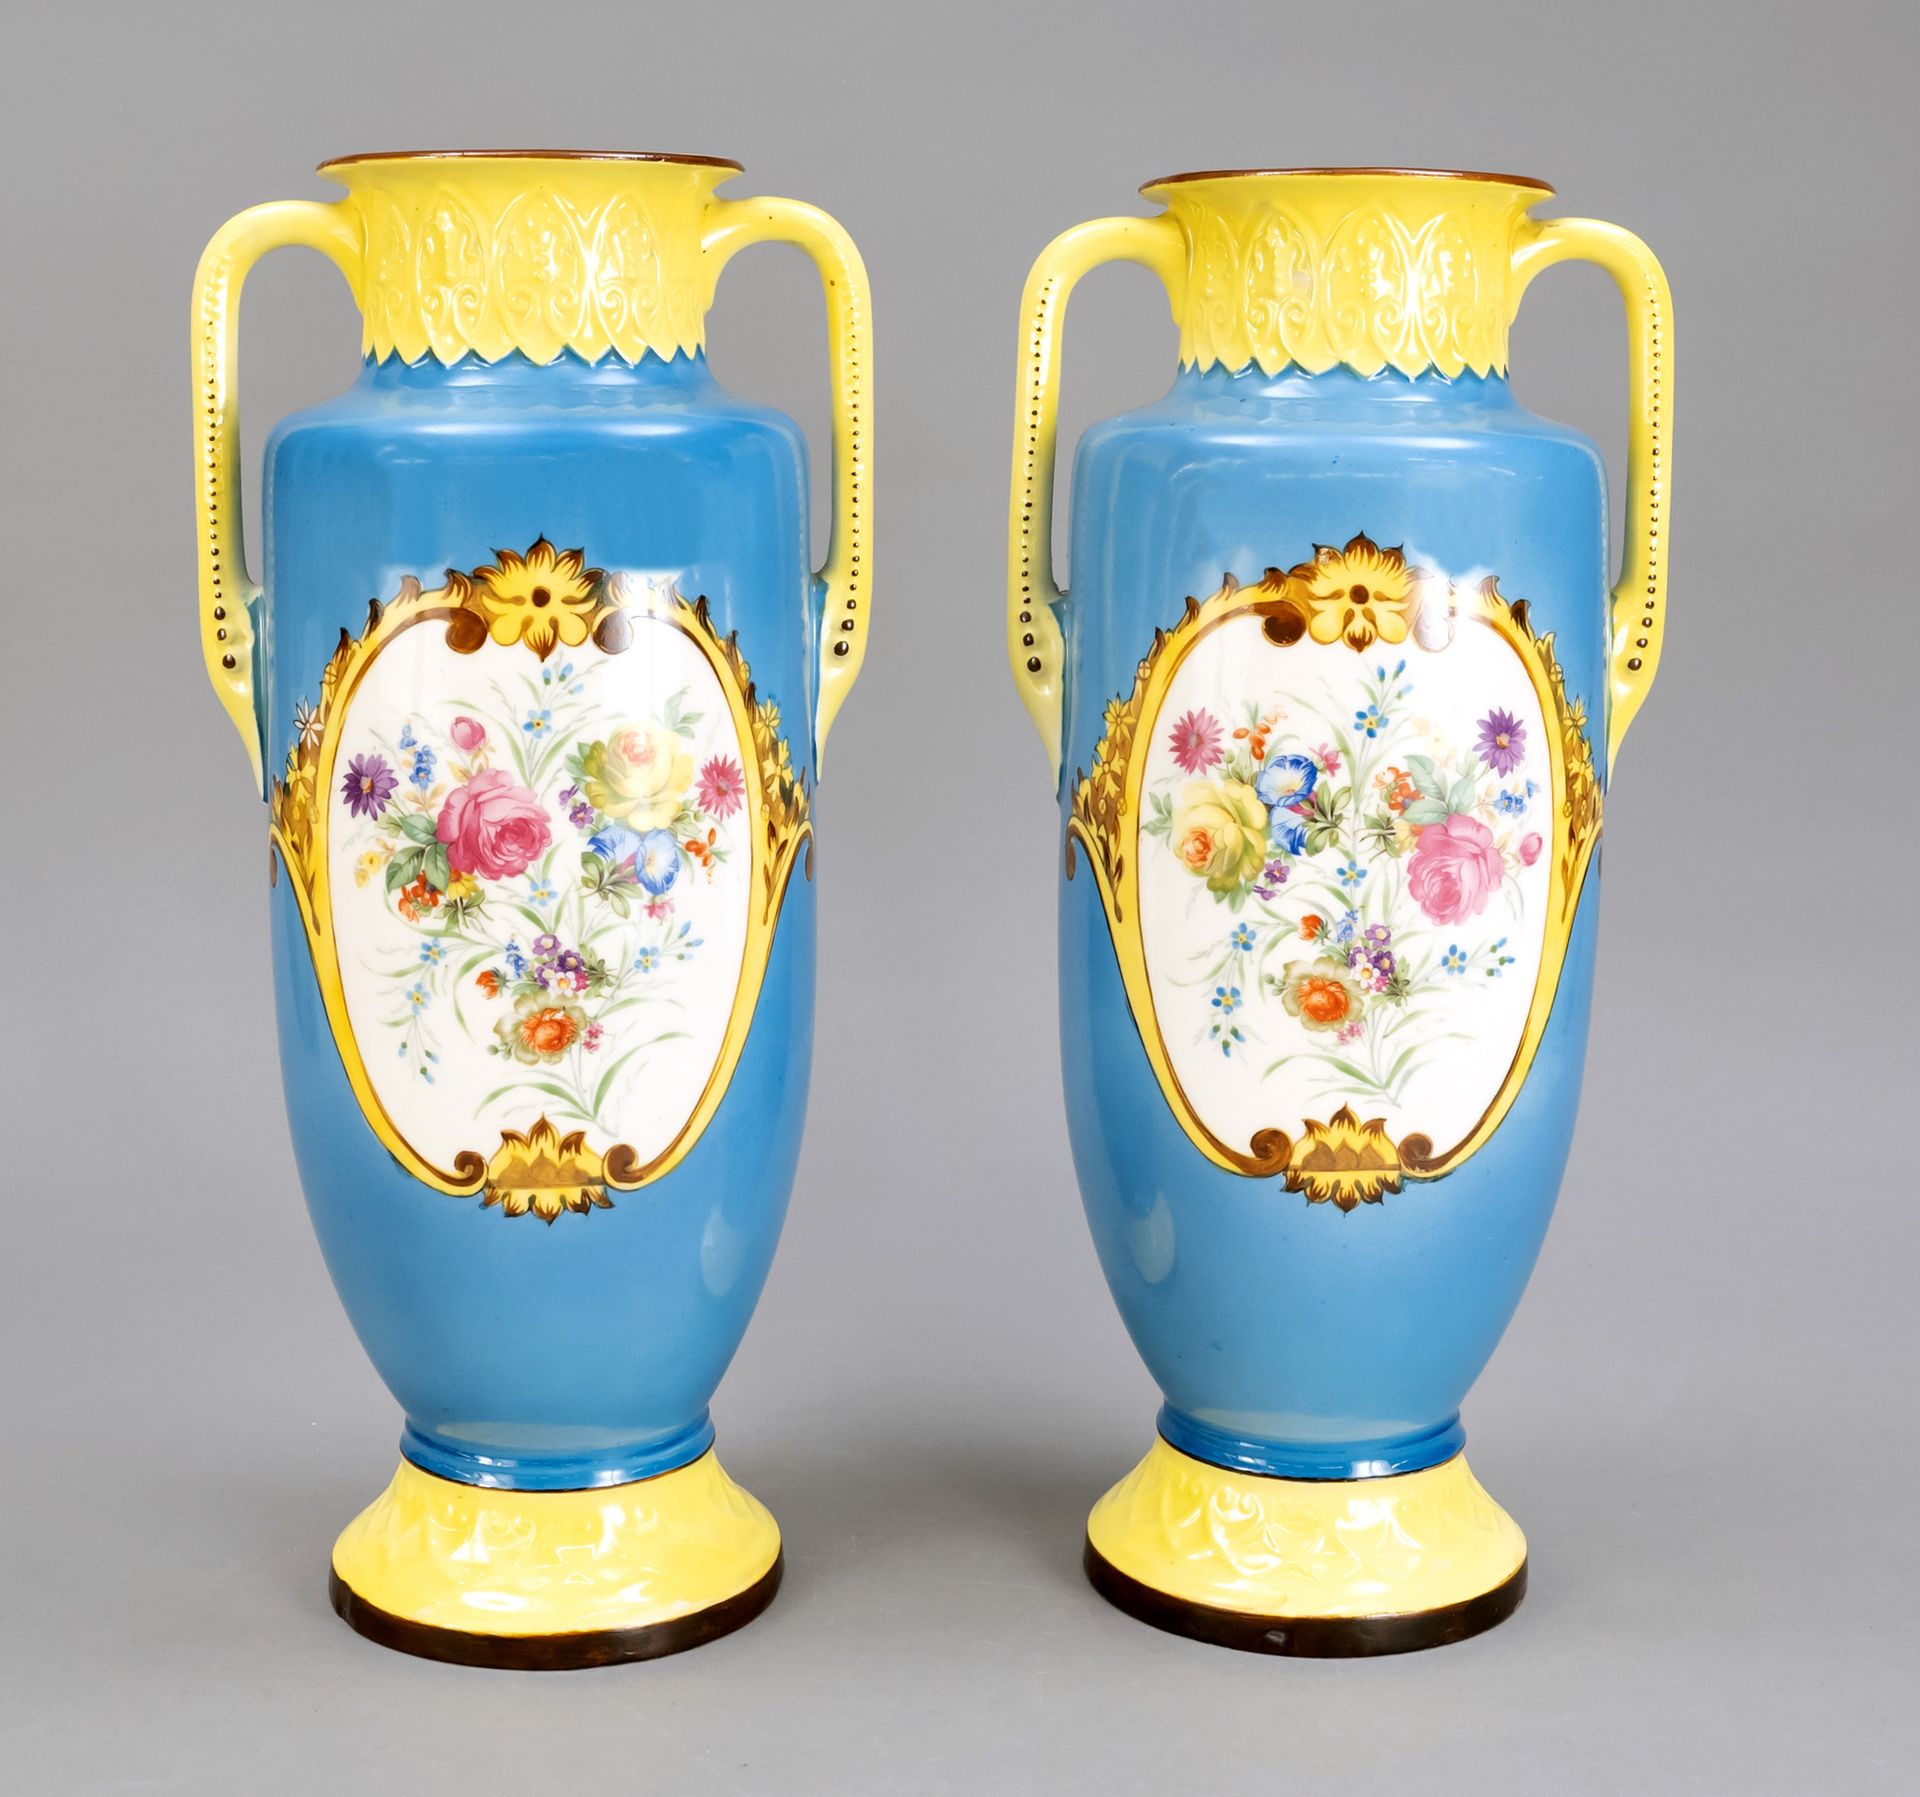 Null 一对大型陶瓷花瓶，20世纪上半叶，圆形支架，瓮形瓶身，侧面有把手，蓝色和黄色的背景，多色花装饰在一个装饰的卡图上，高40,5厘米